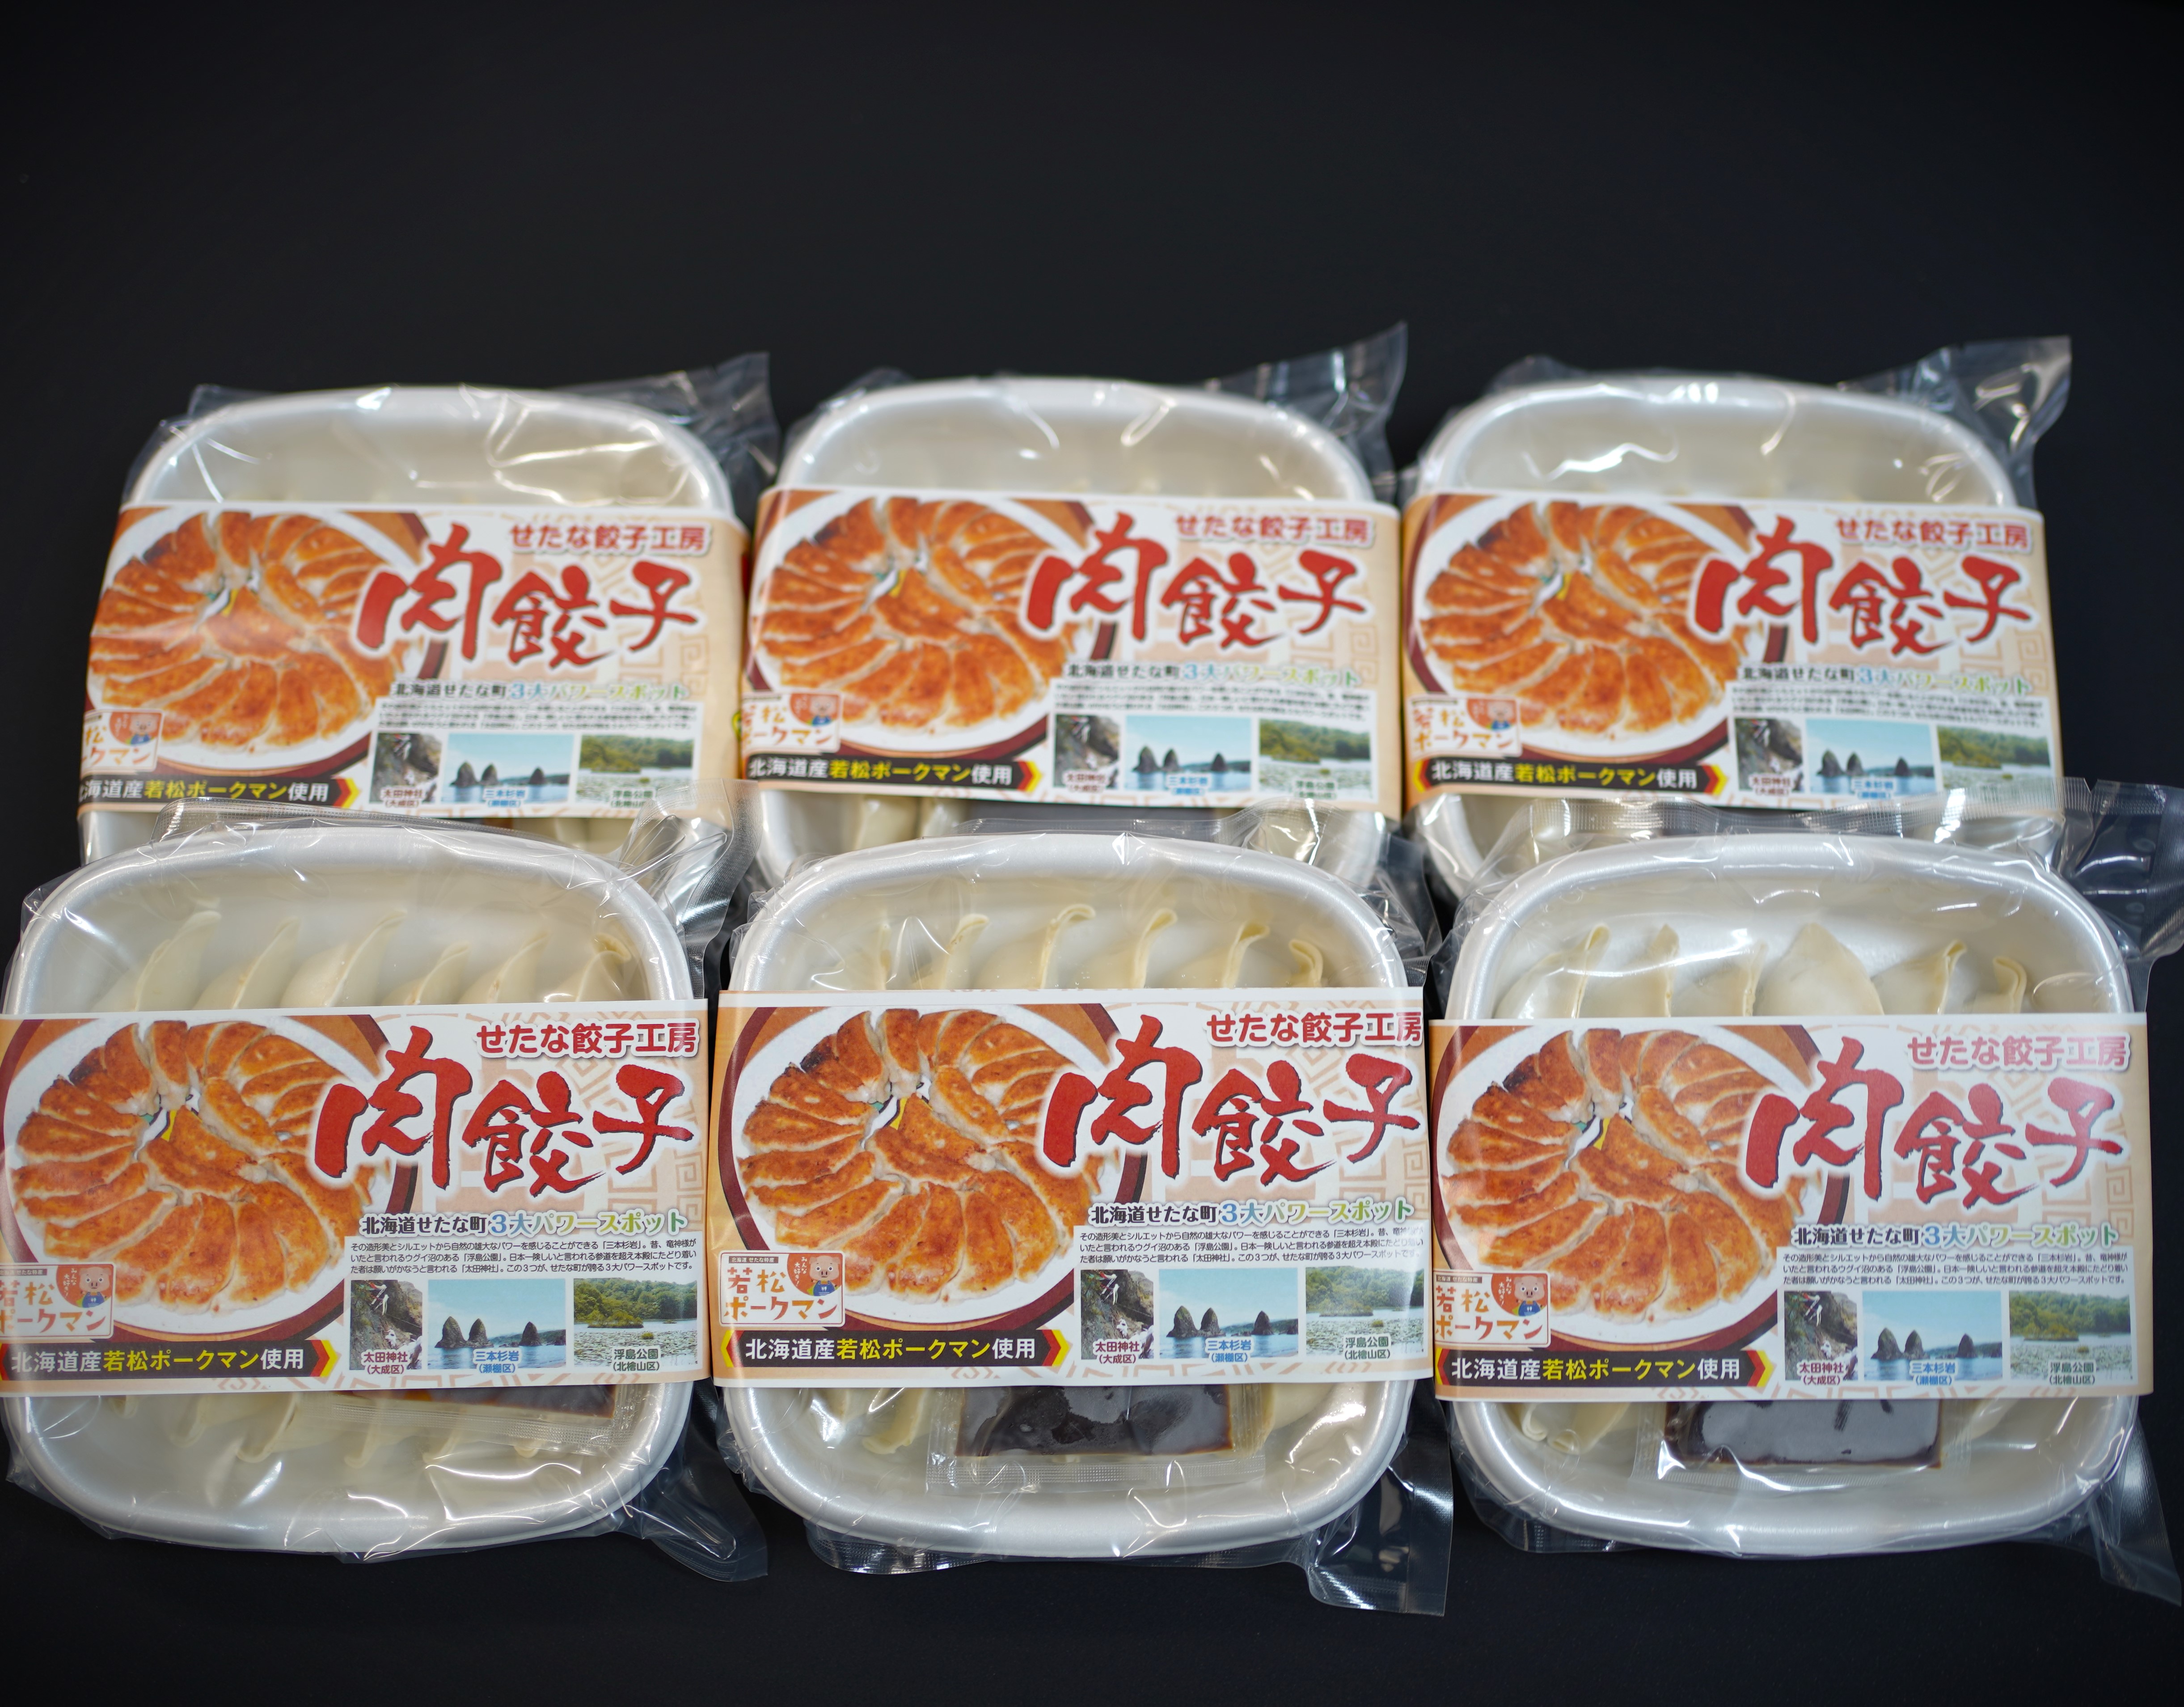 北海道ブランドSPF豚「若松ポークマン」を使った肉餃子72個(12個入り×6パック)